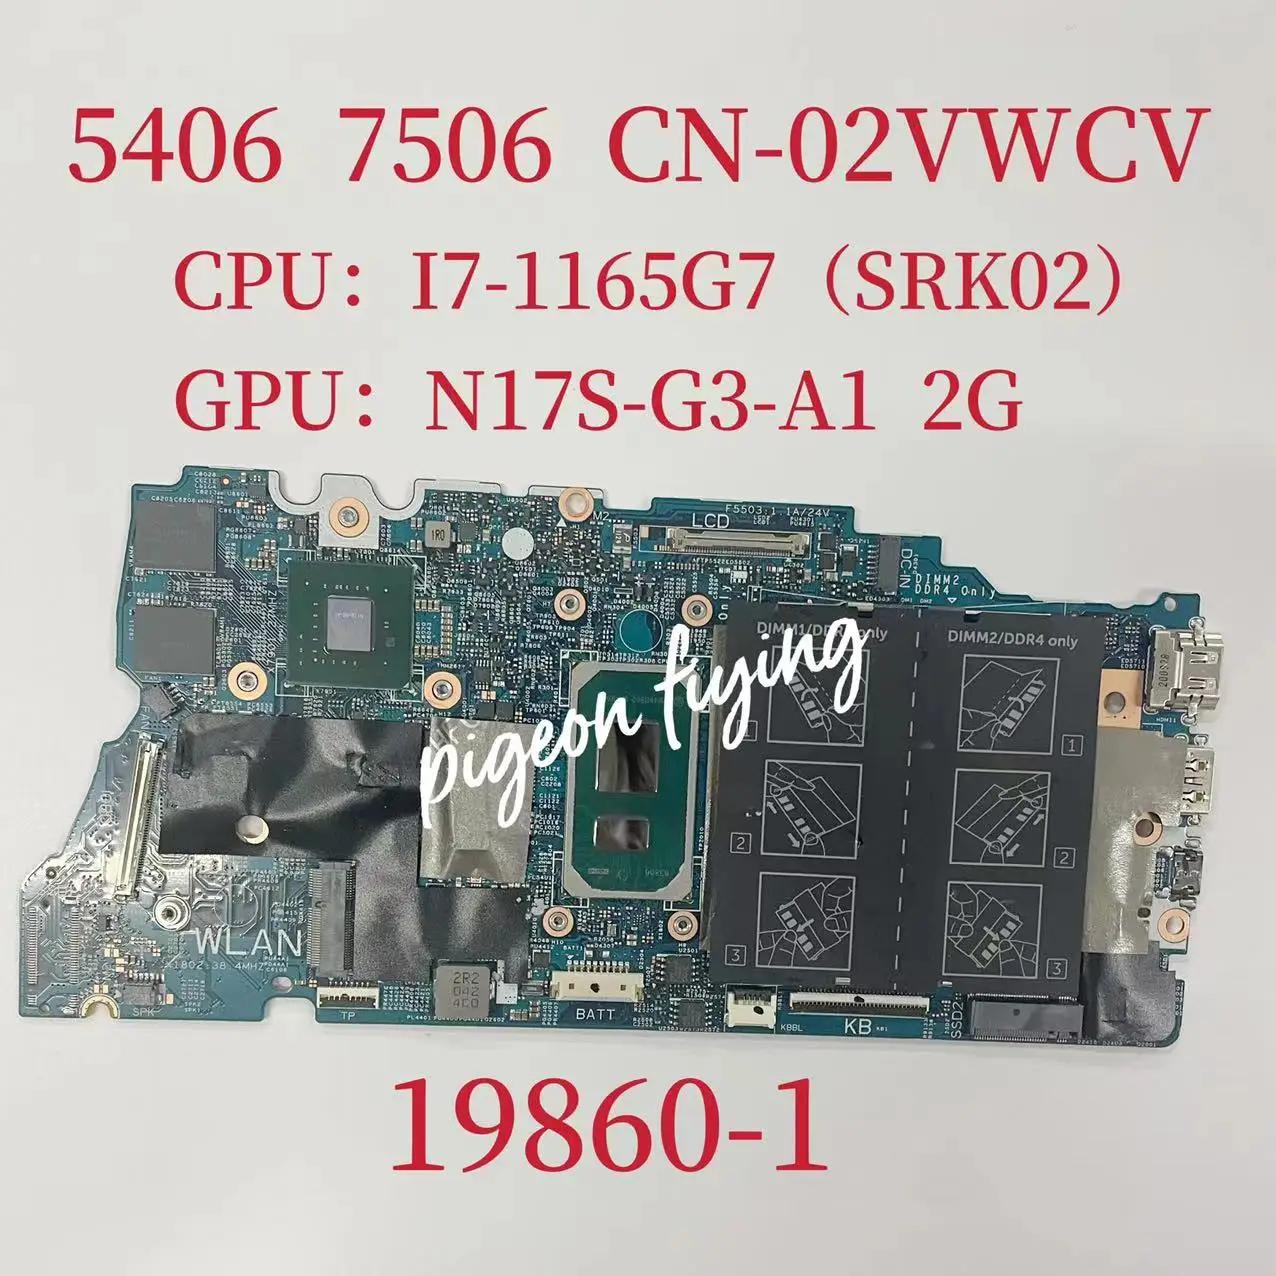  νǷ 5406 7506 Ʈ  κ, CPU: I7-1165G7 SRK02 GPU:N17S-G3-A1 2G CN-02VWCV 02VWCV 2VWCV, 19860-1